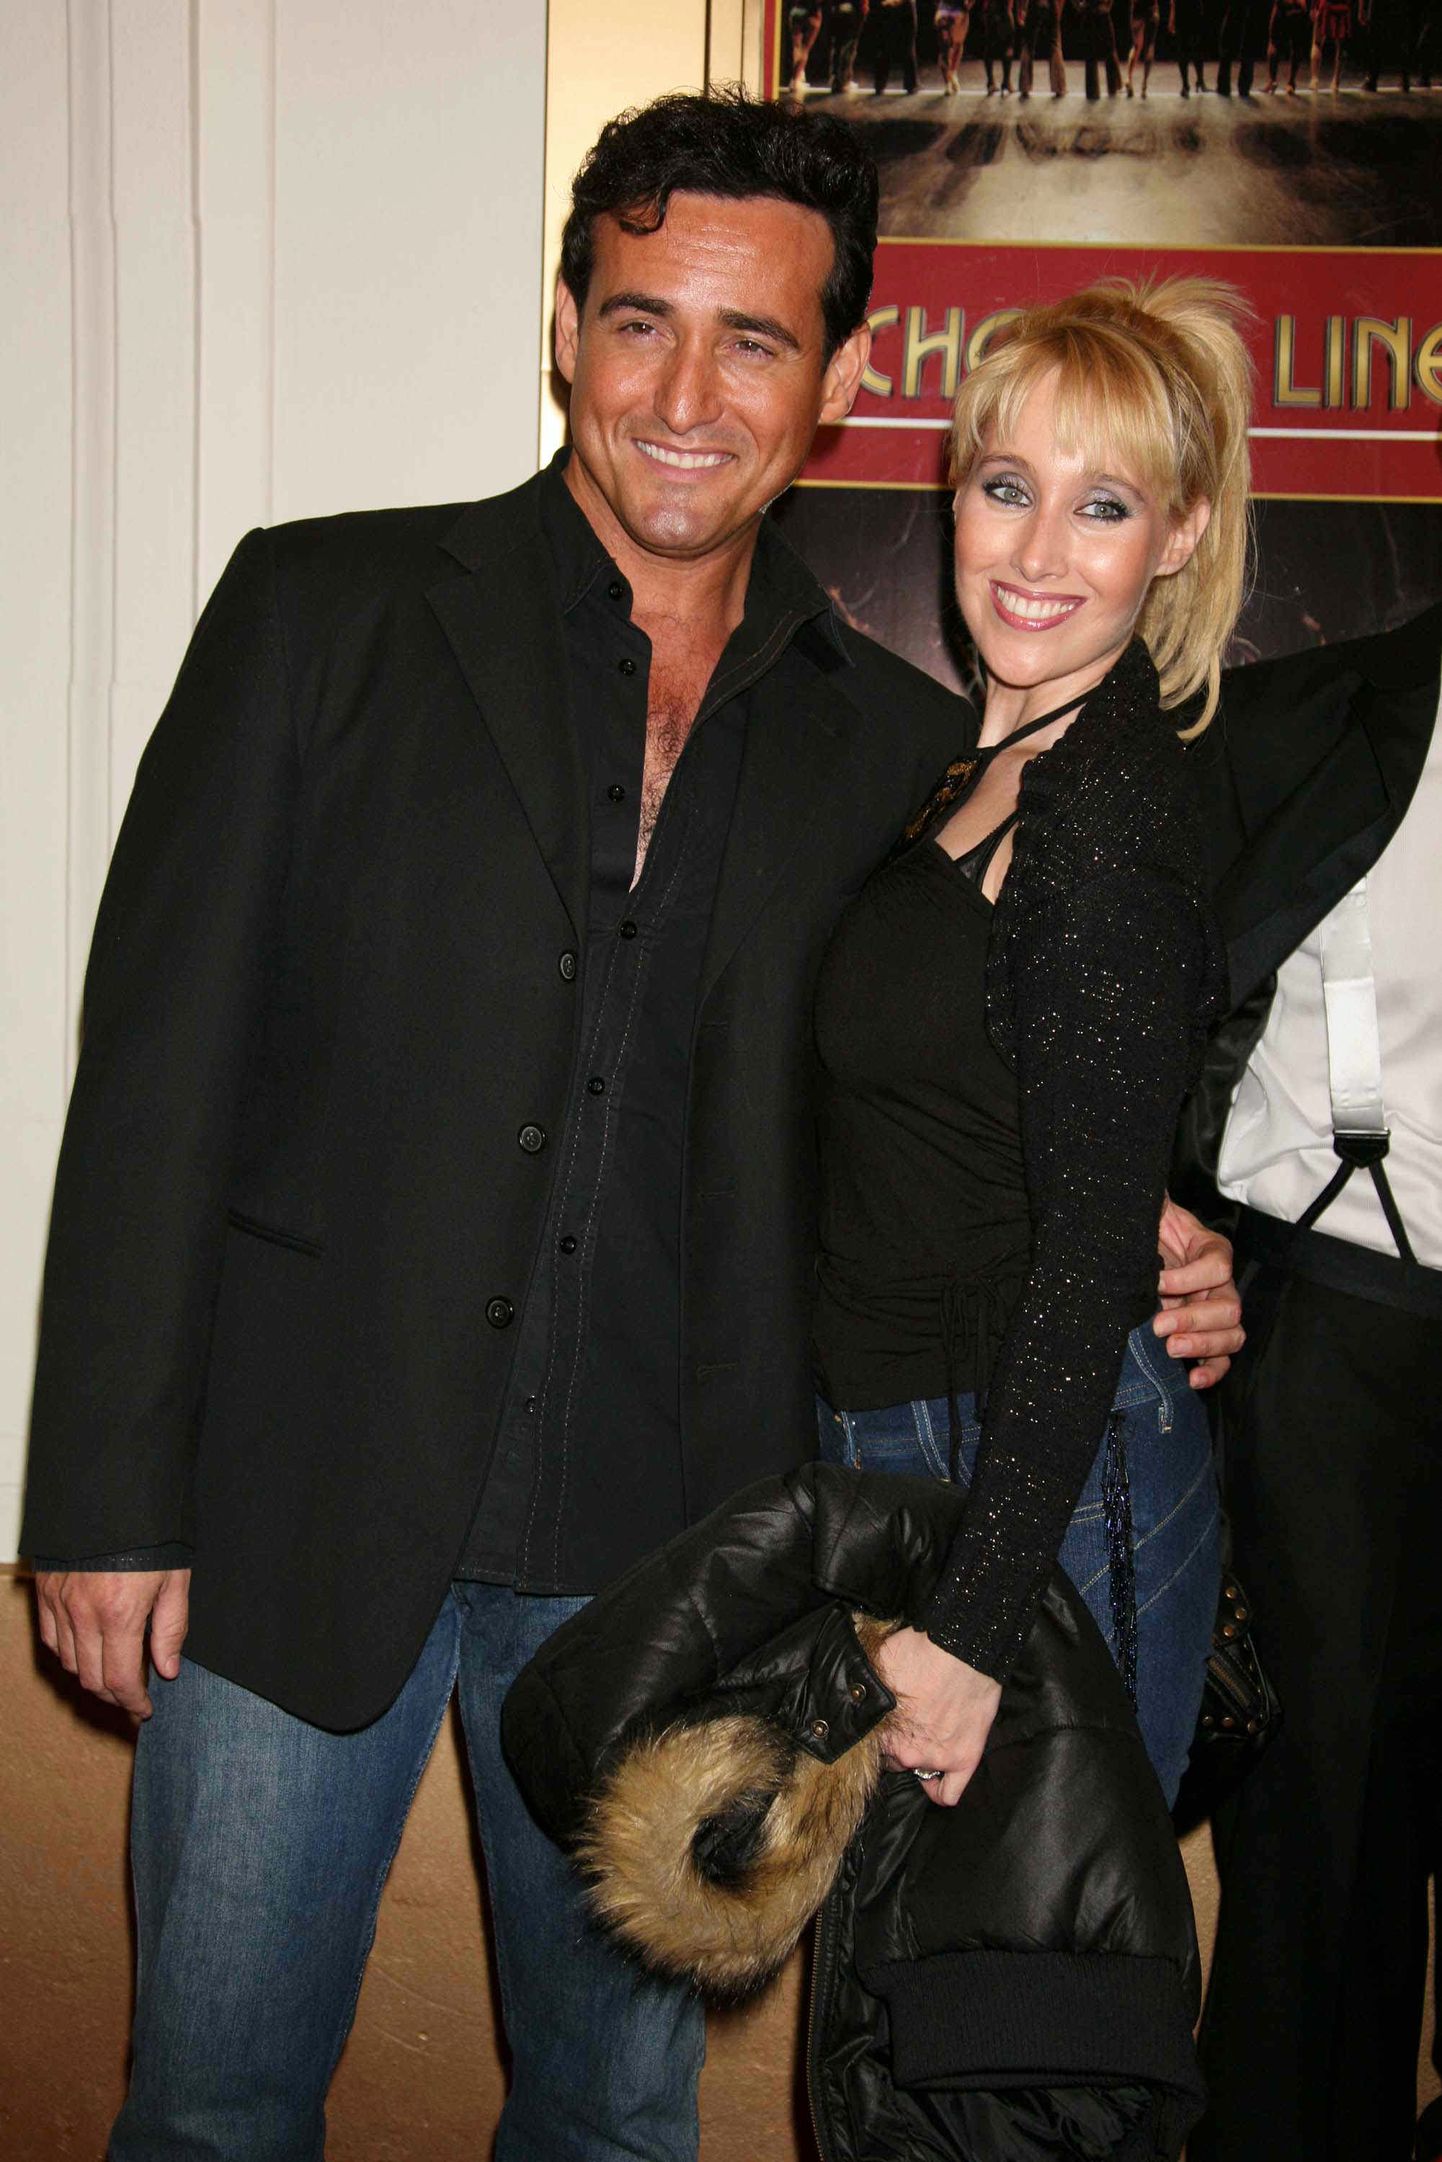 Carlos Marin ja tema eksabikaasa Geraldine Larrosa 2006. aastal.